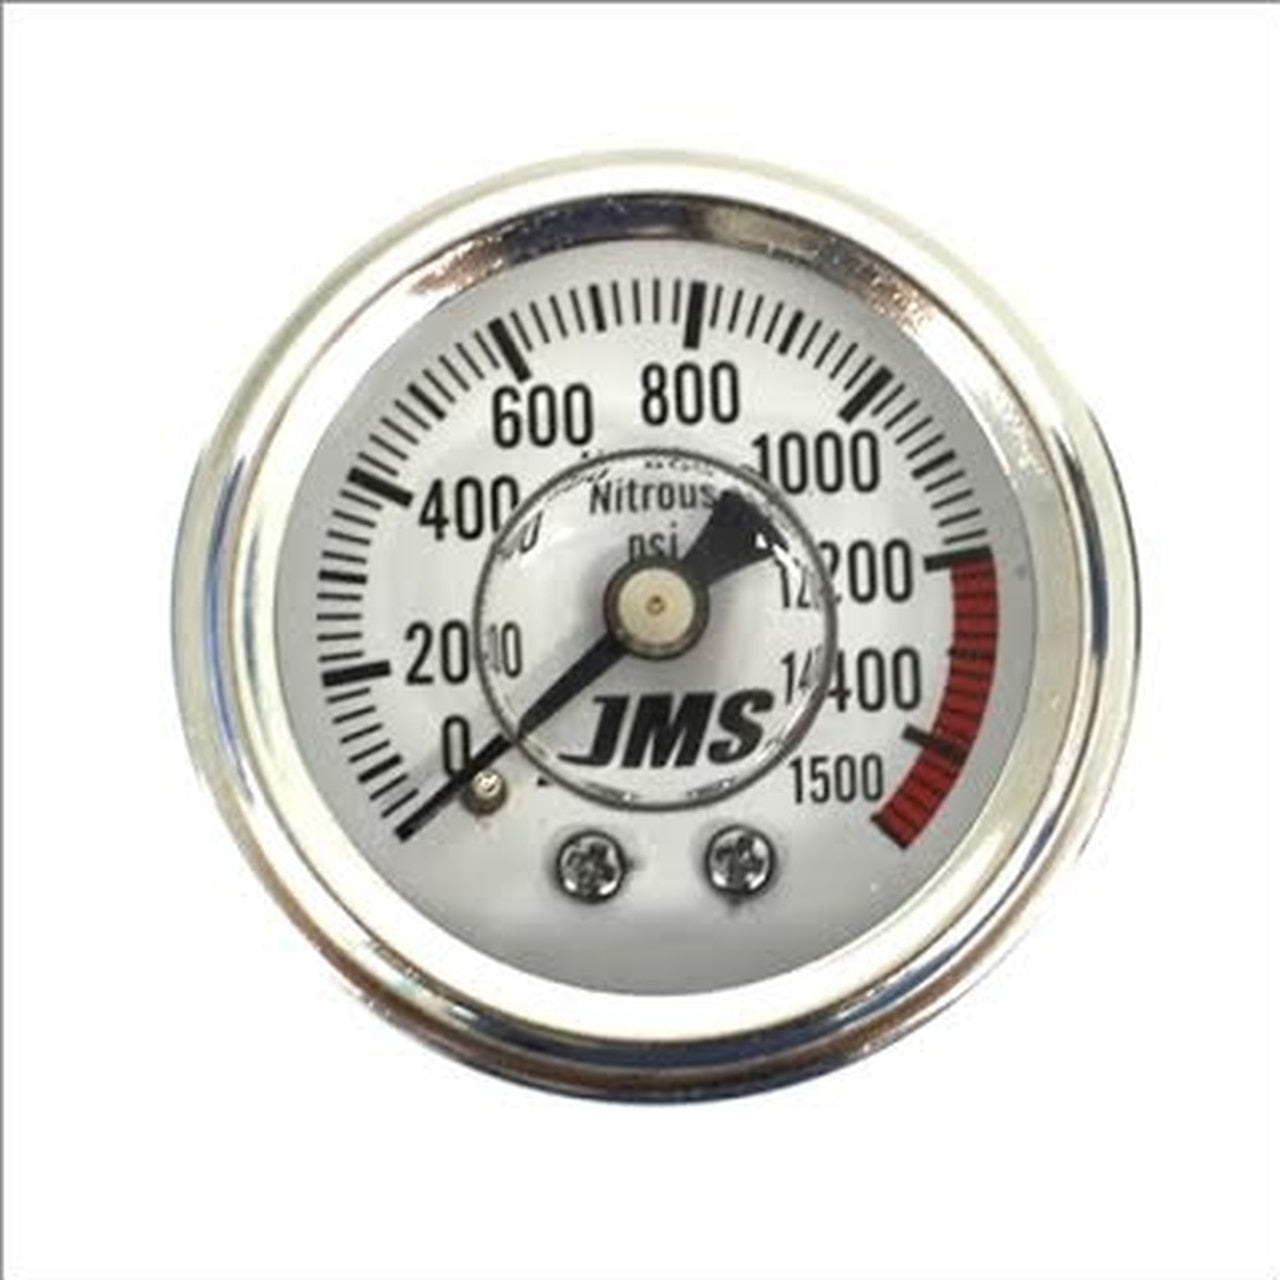 JMS Nitrous Pressure Gauge GA15001500